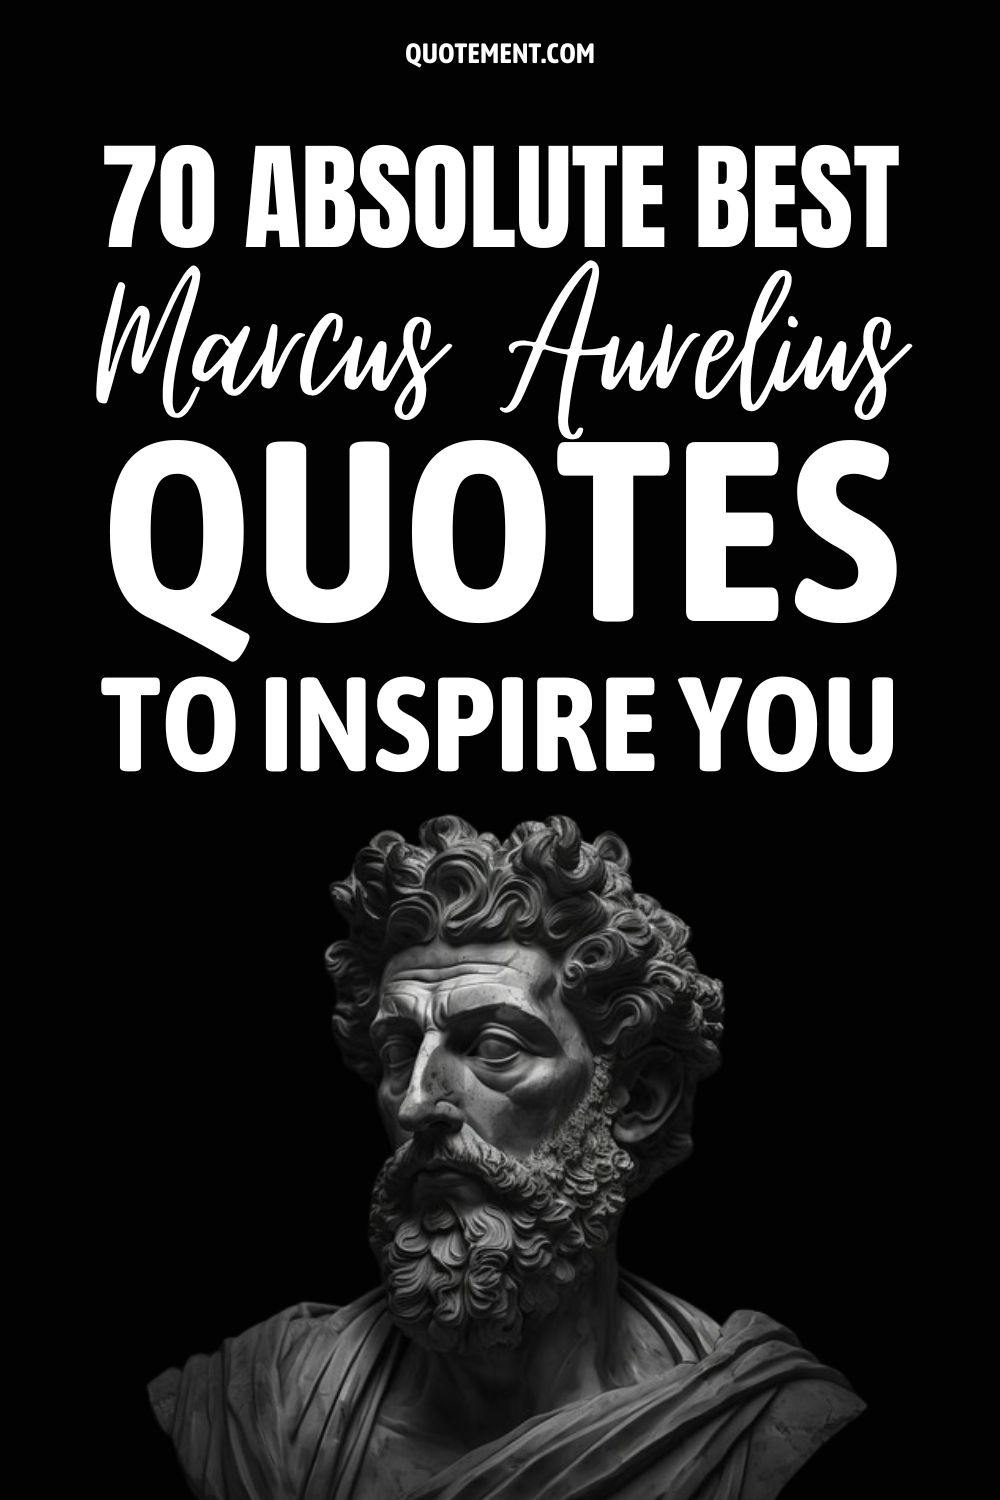 70 Absolute Best Marcus Aurelius Quotes To Inspire You
